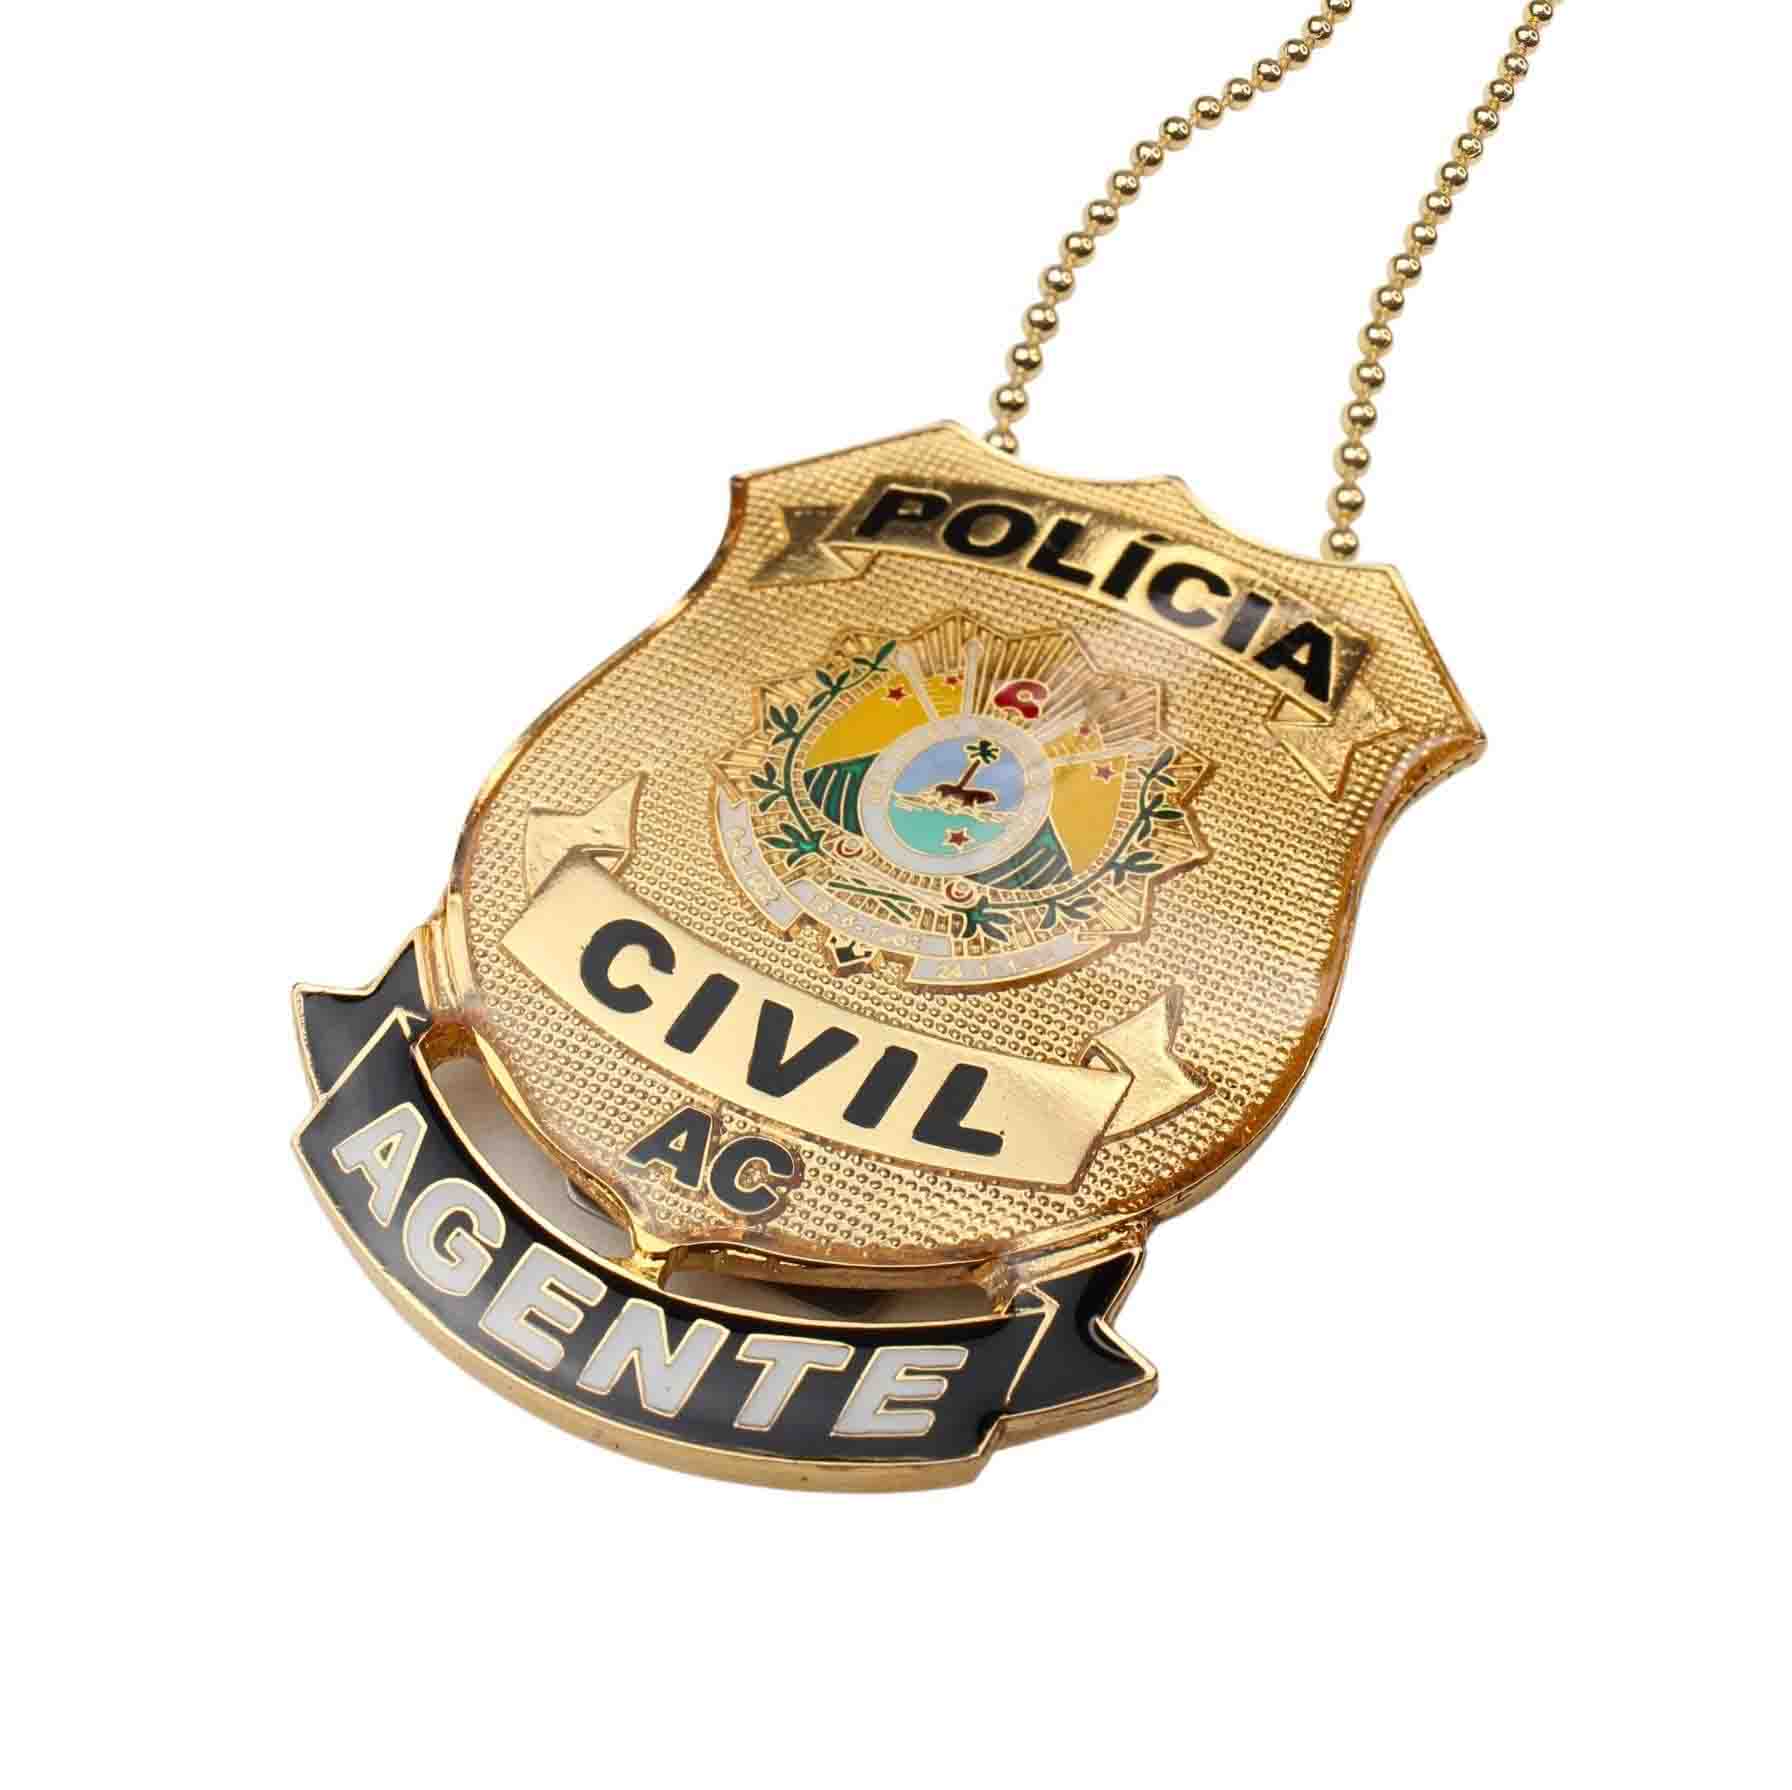 DISTINTIVO POLÍCIA CIVIL/ AC AGENTE - DOURADO